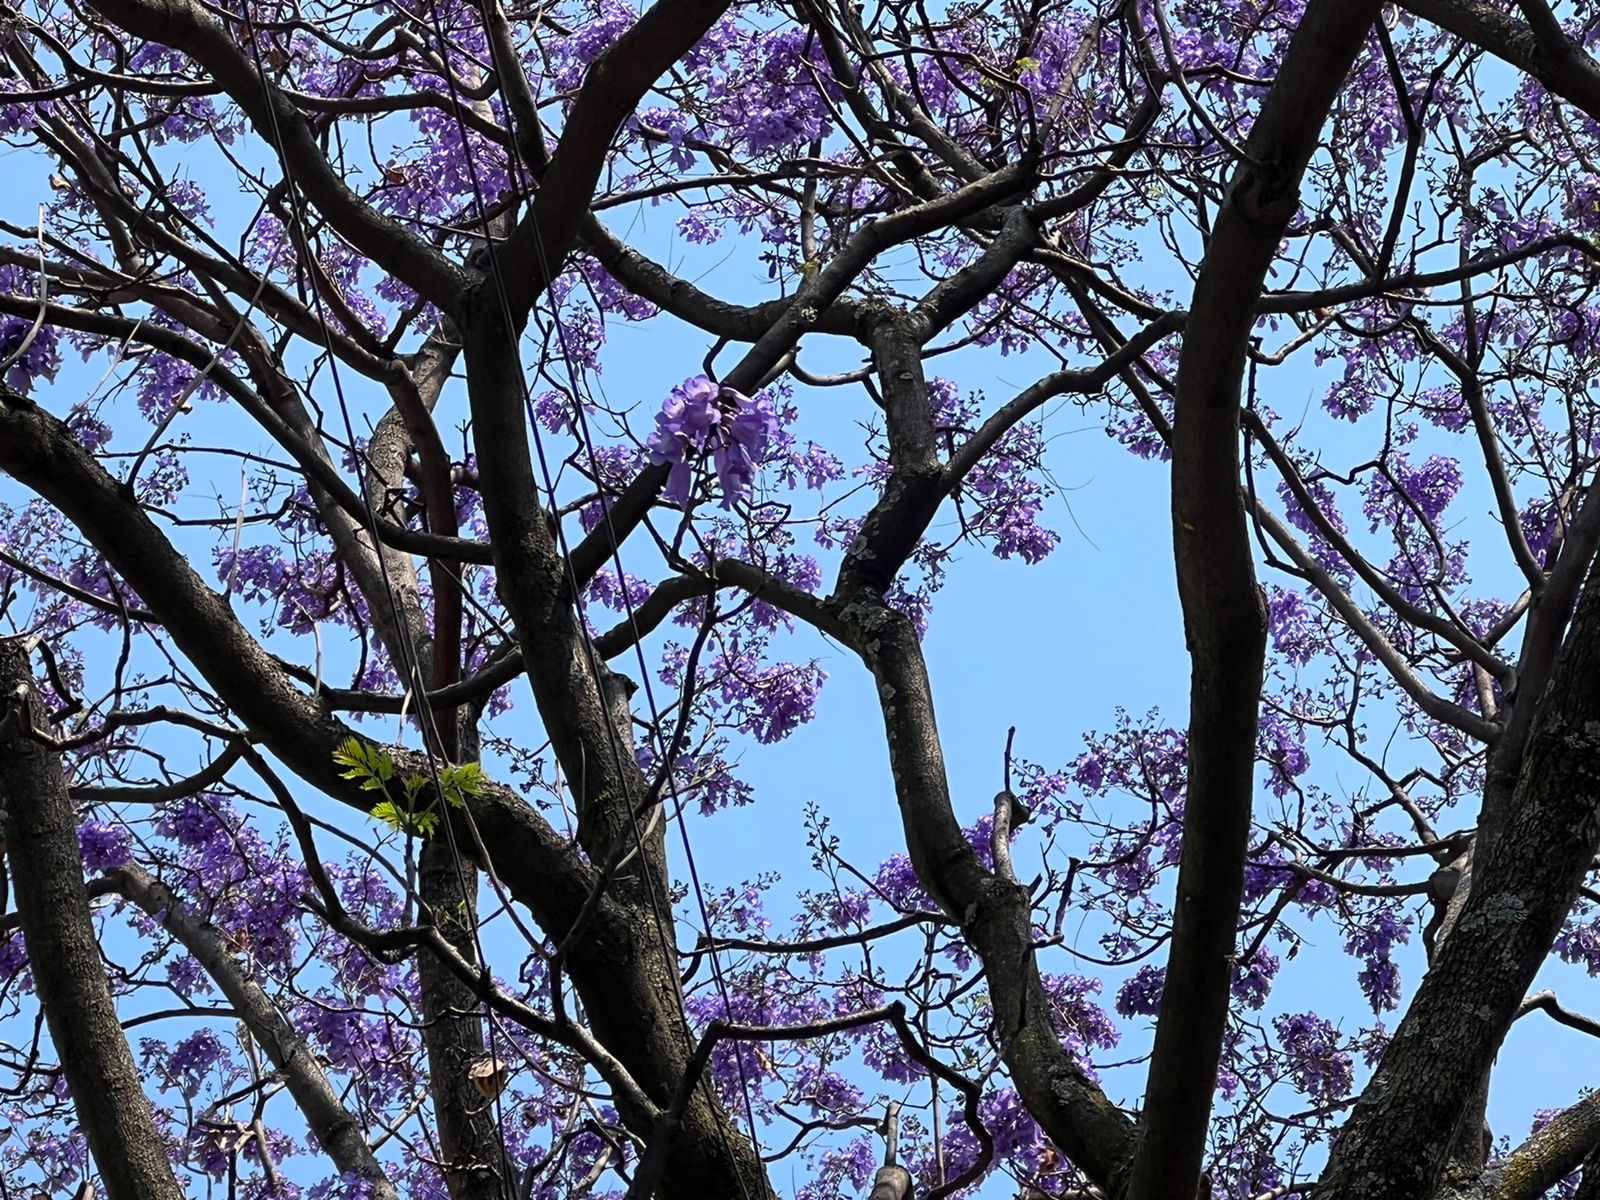 Empiezan a florecer los árboles de jacarandas en la Ciudad de México